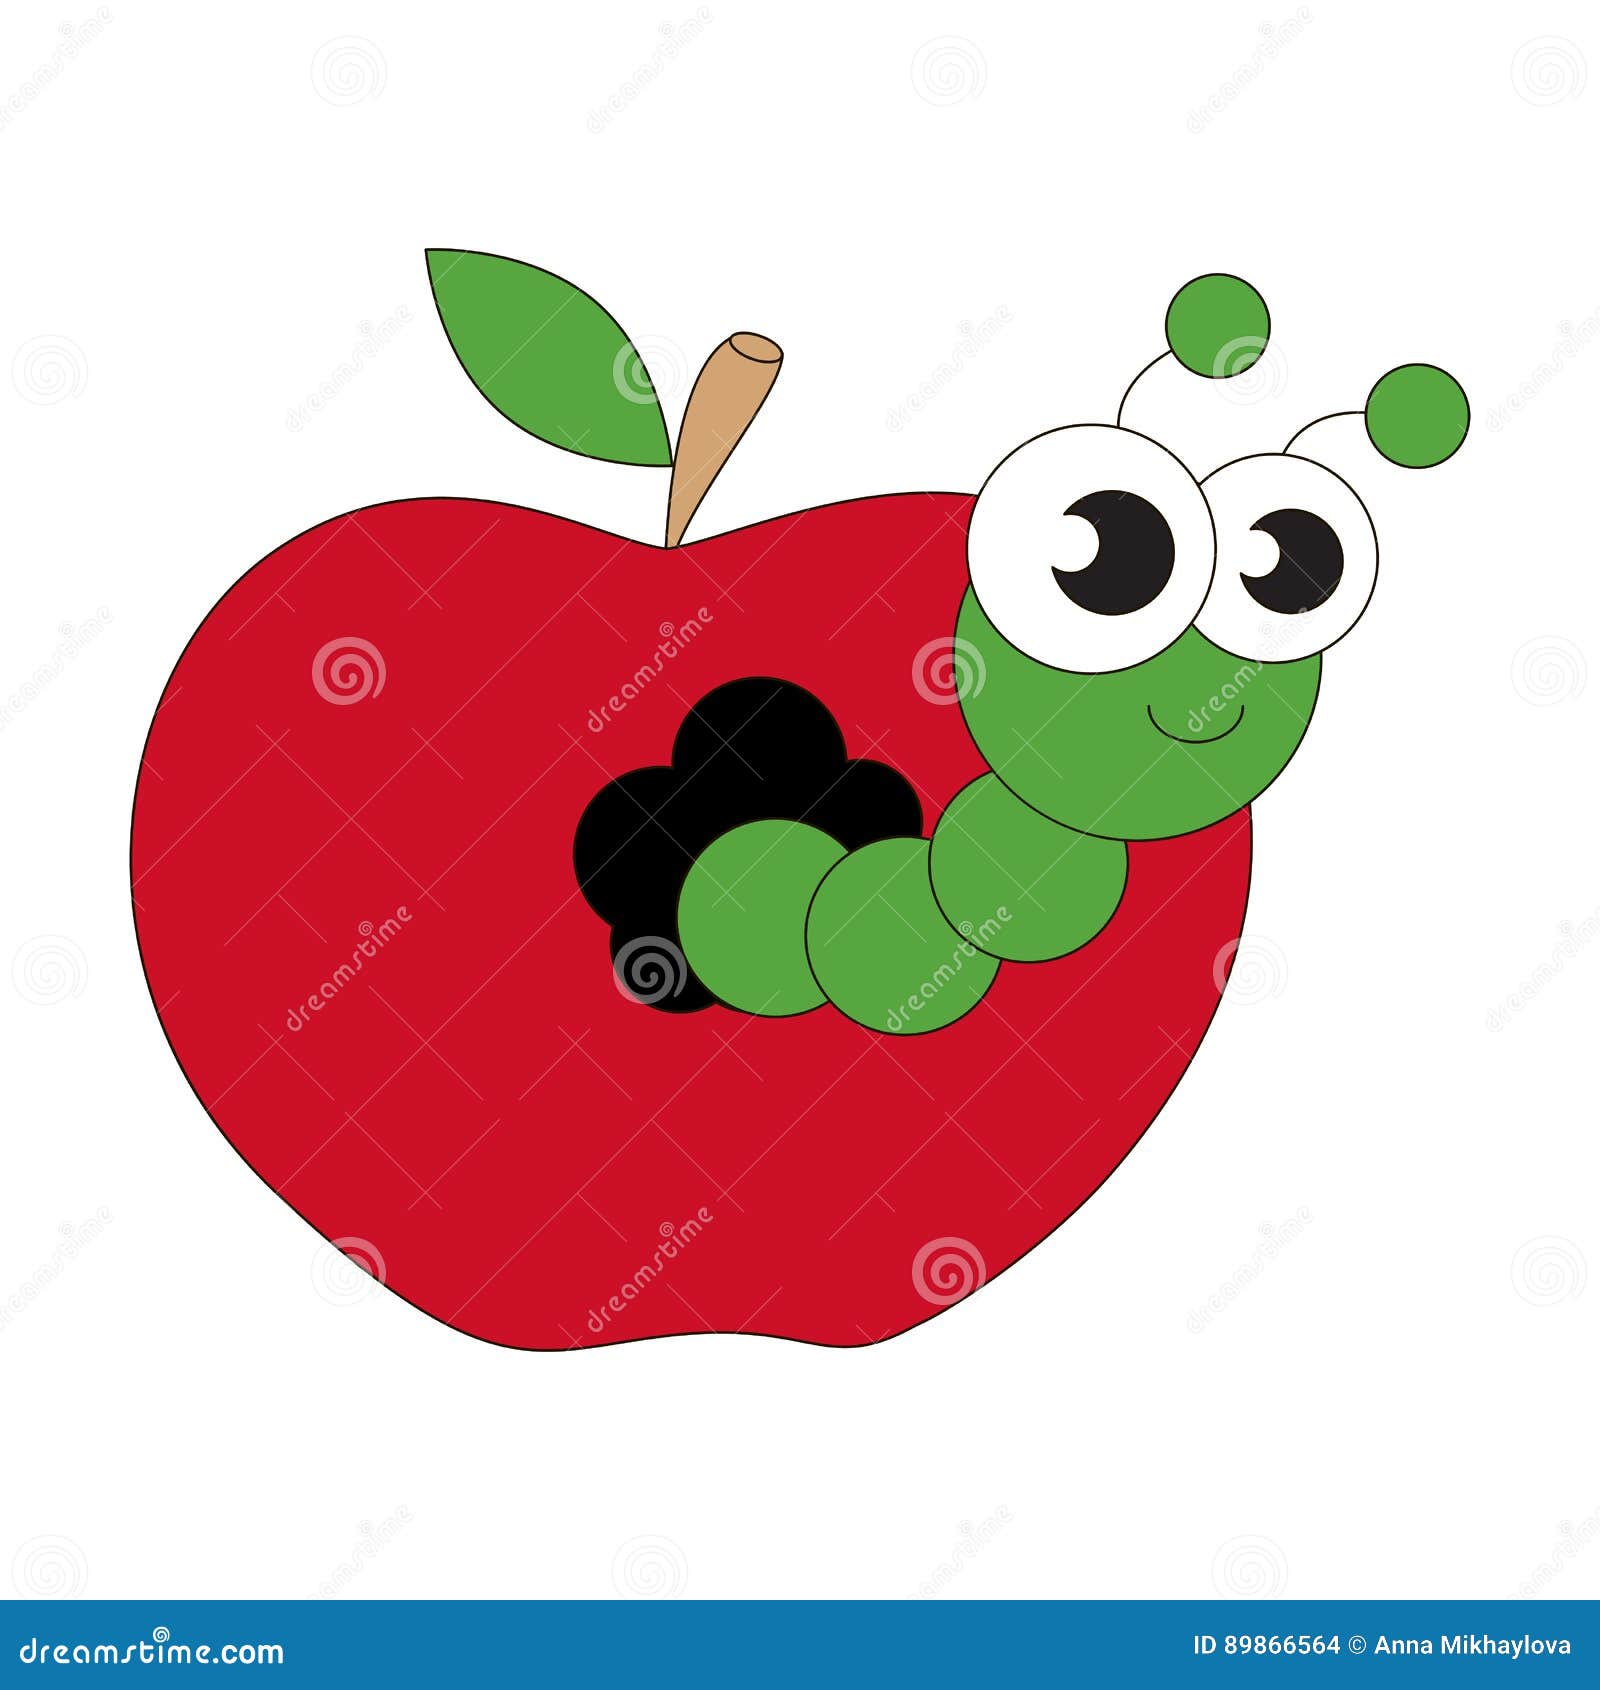 Яблочко с червячком рисование